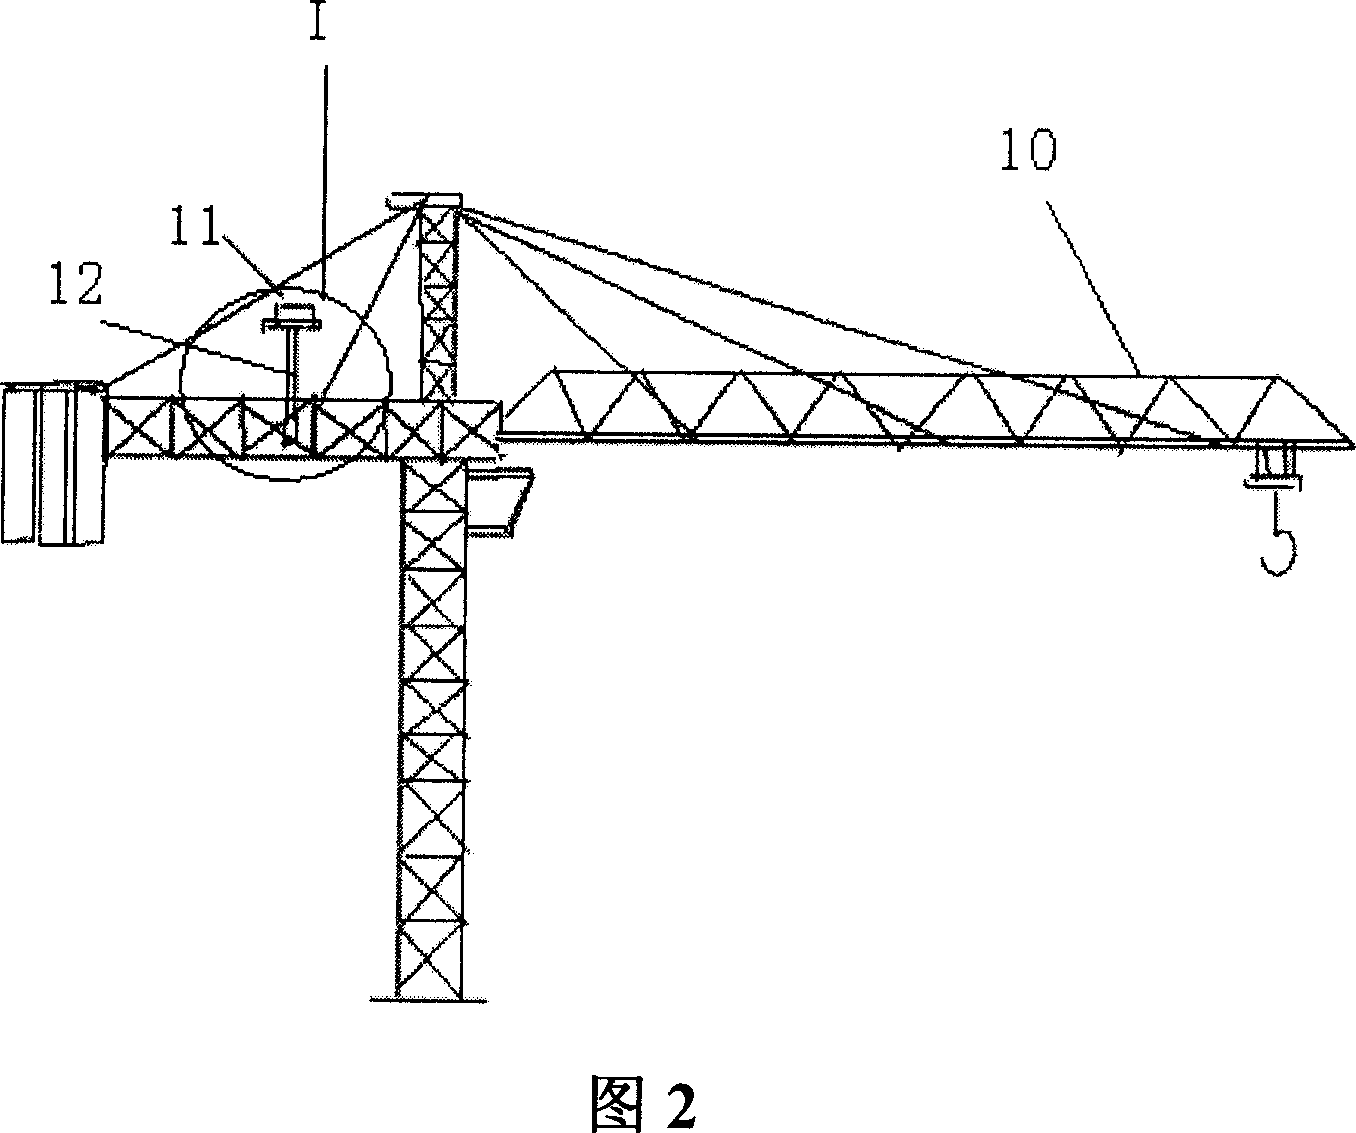 Tower crane using giomagnetic sensor